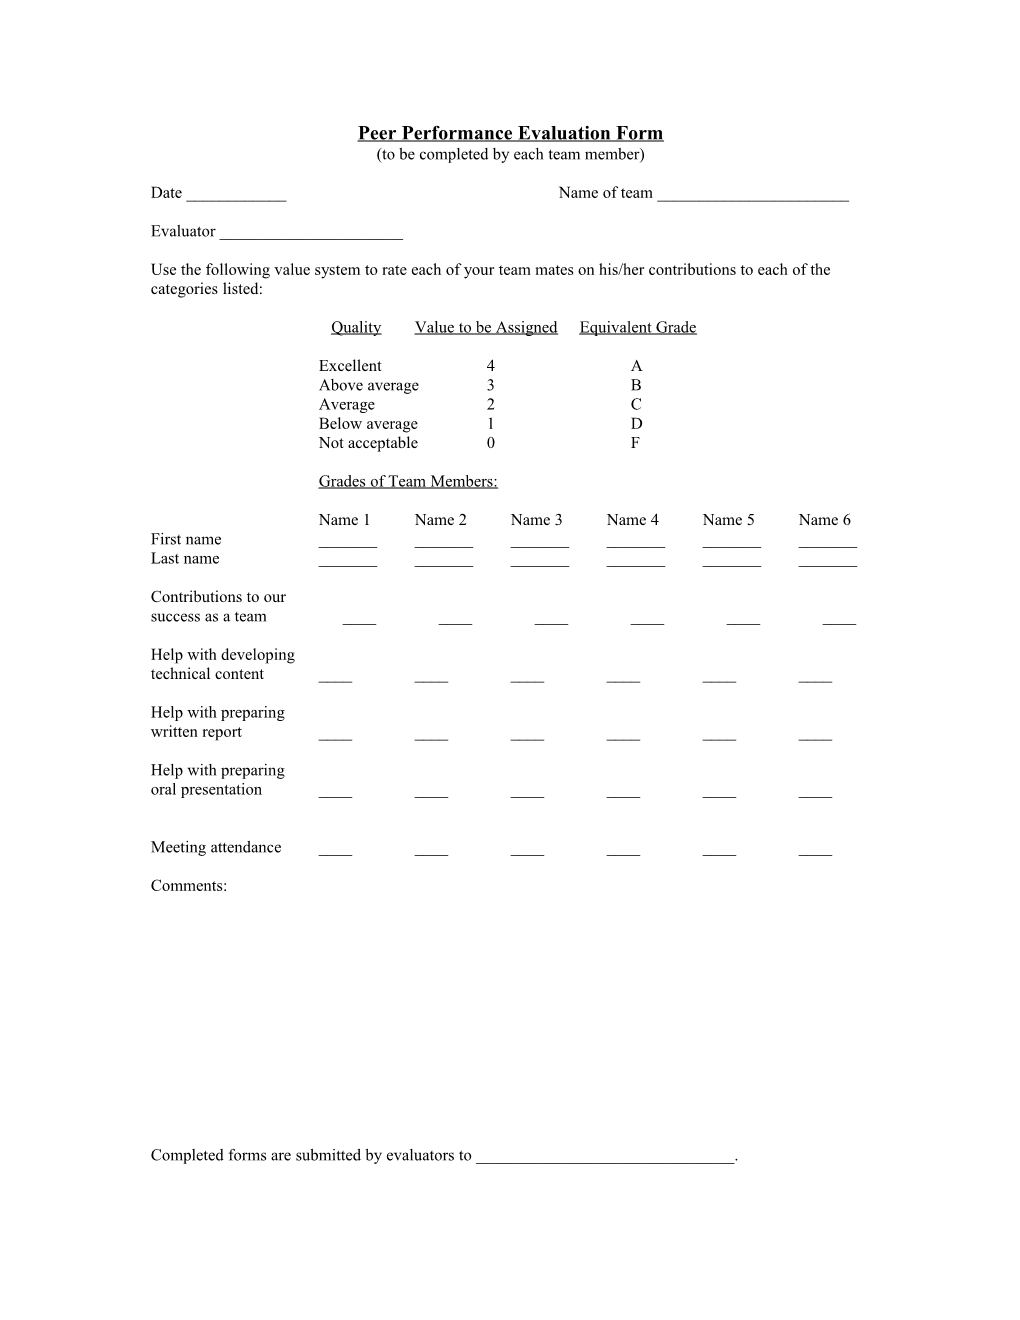 Peer Performance Evaluation Form